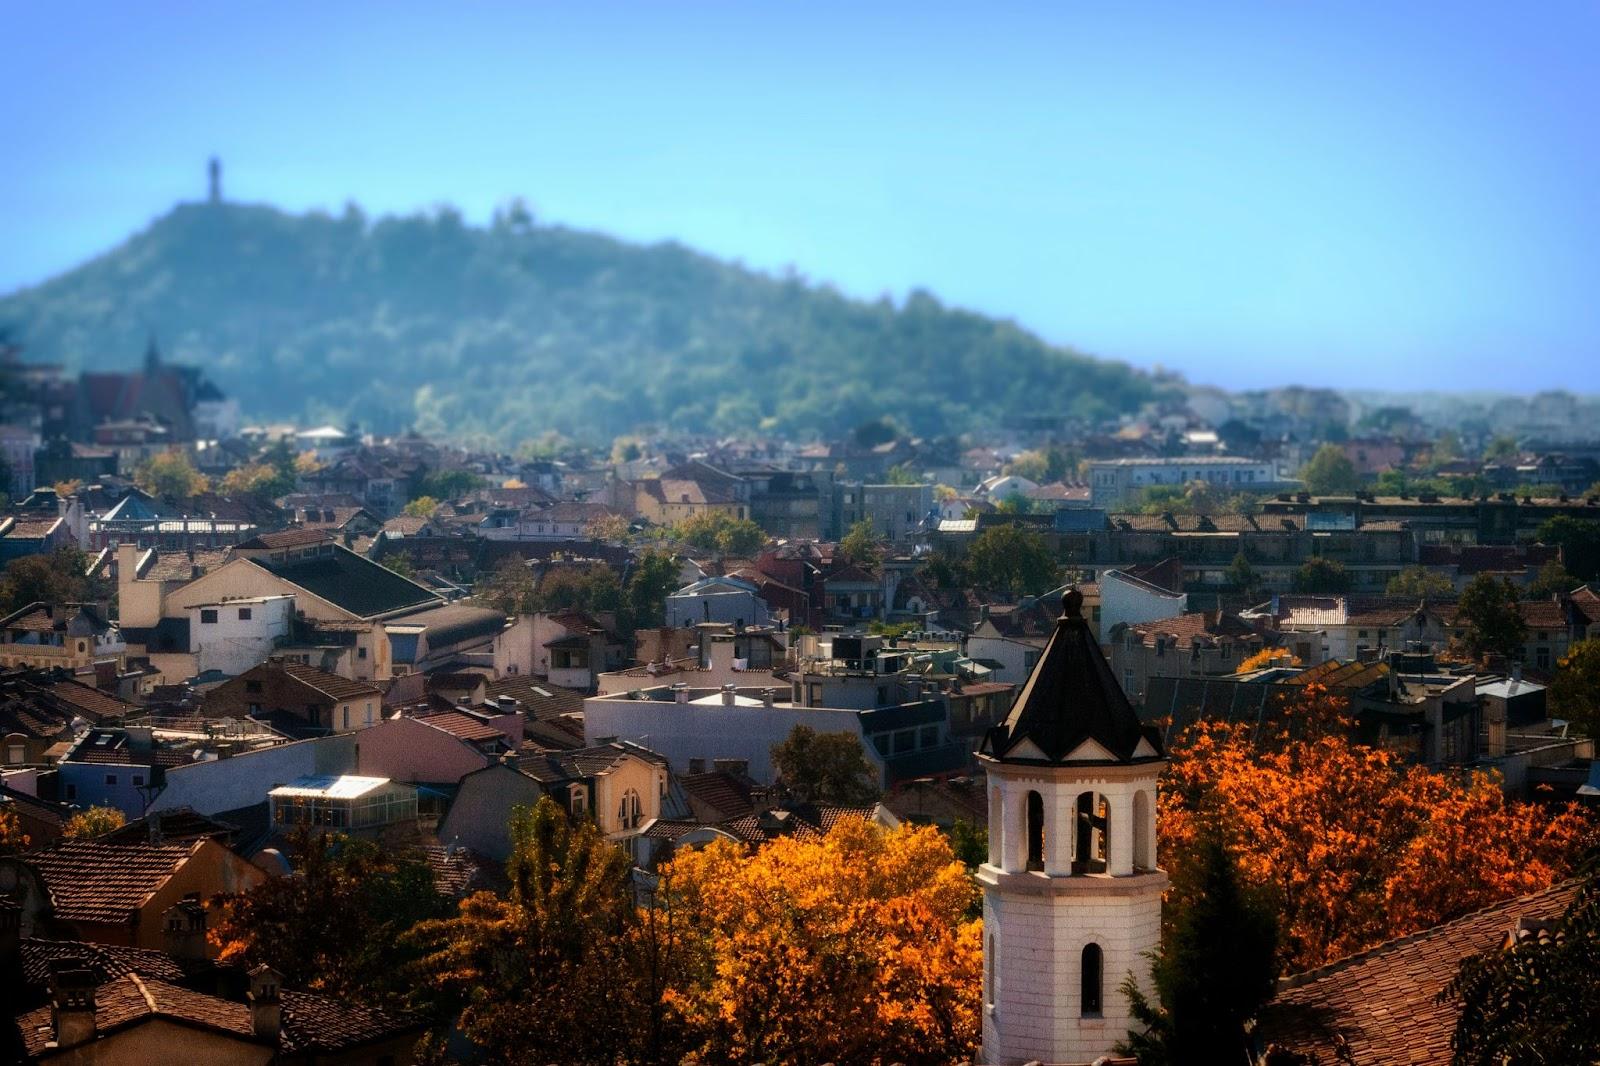 Scenic village in Fall. Plovdiv, Bulgaria